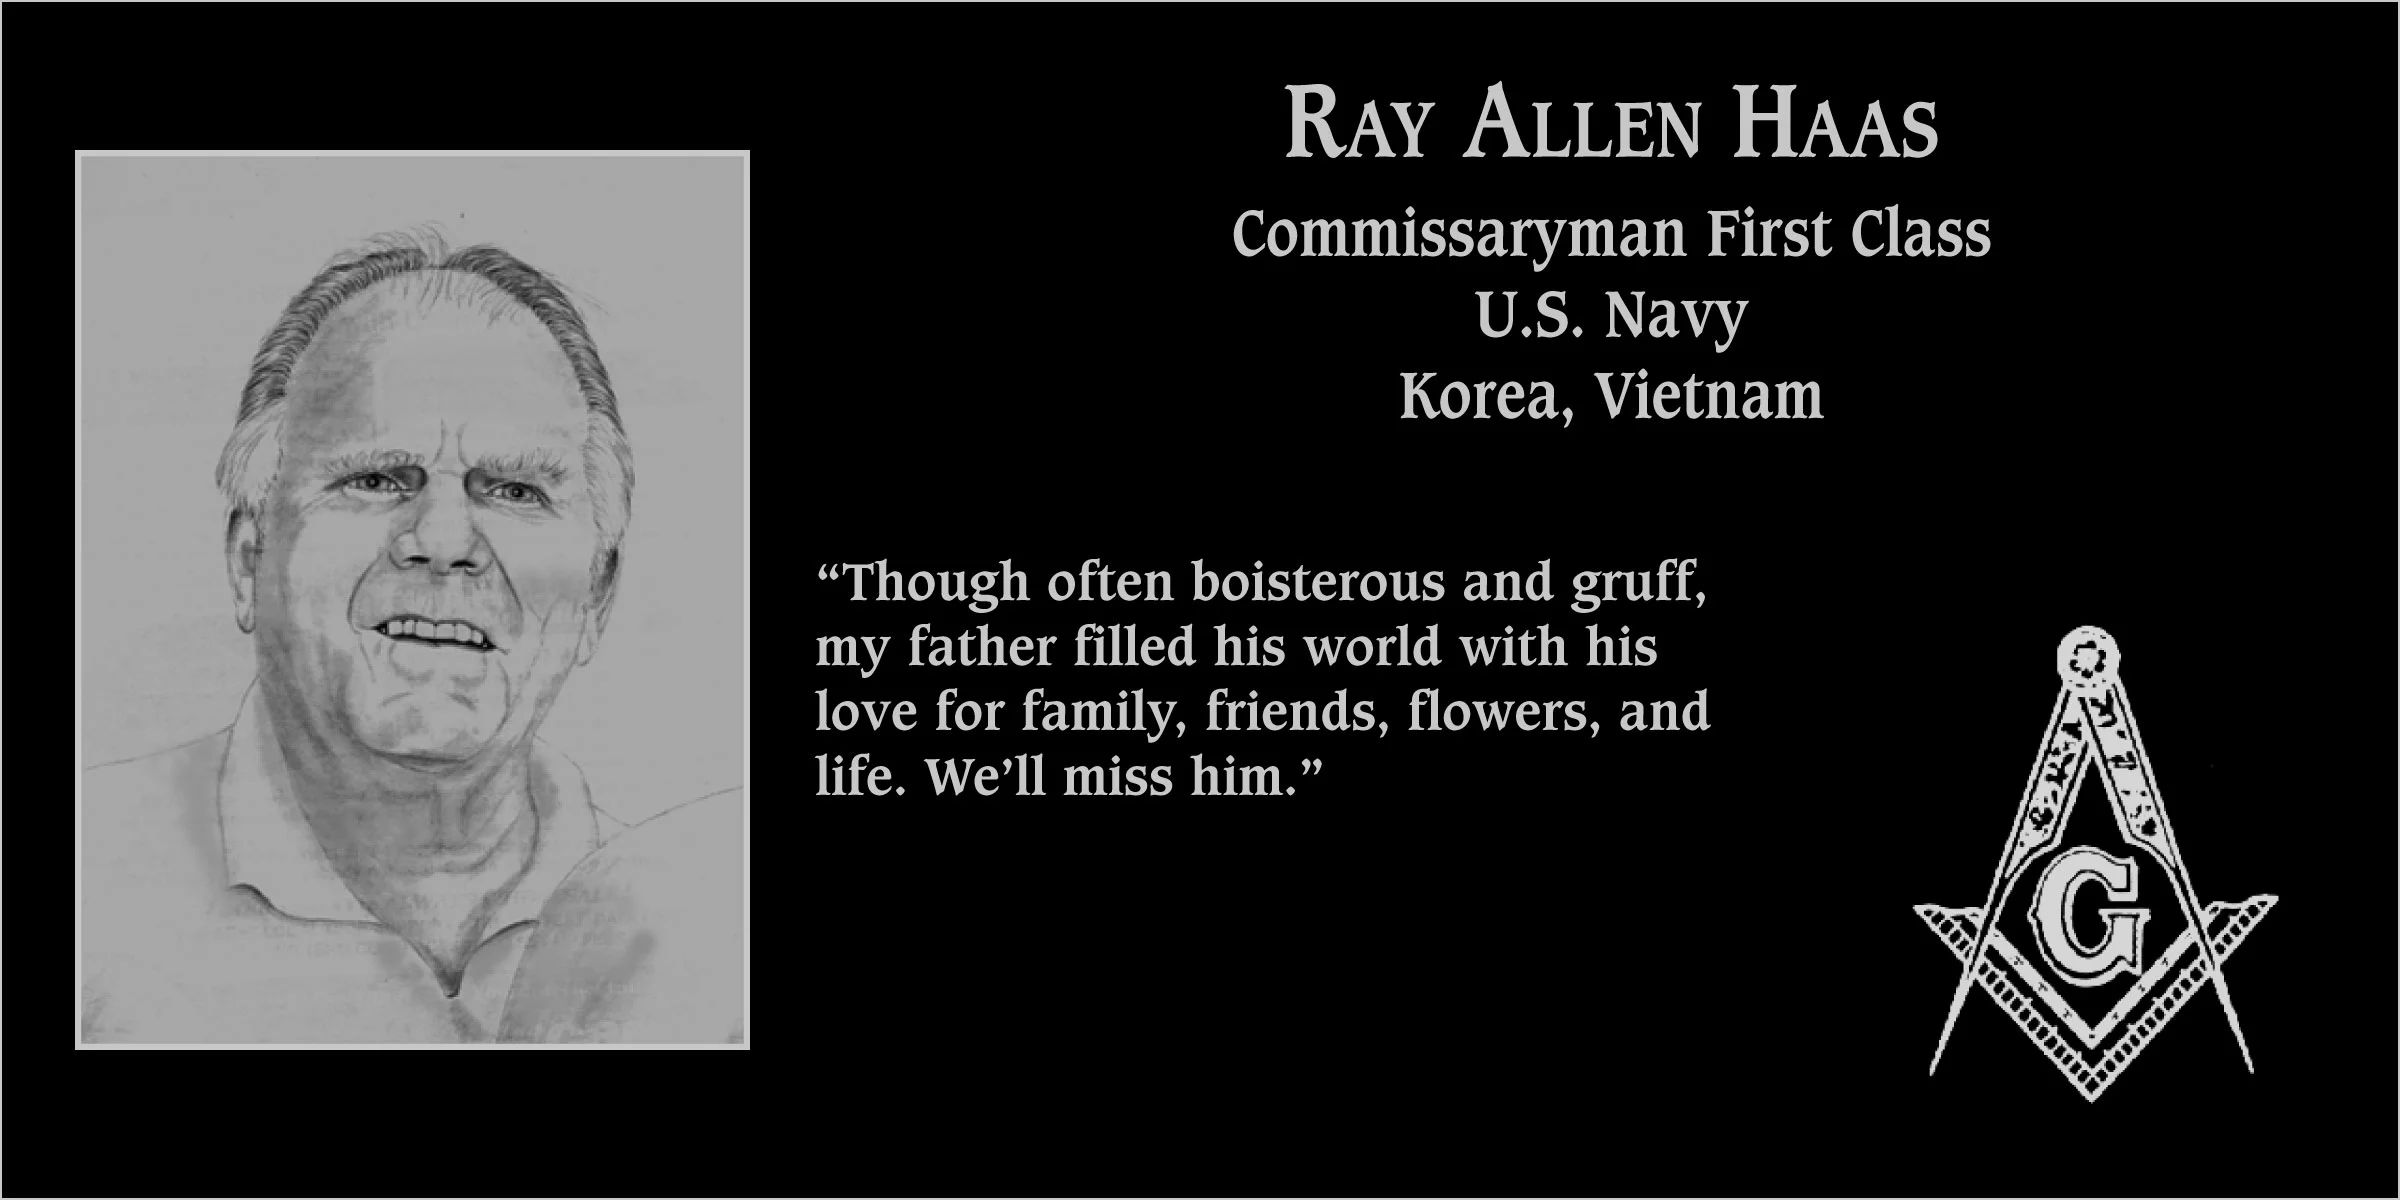 Ray Allen Haas